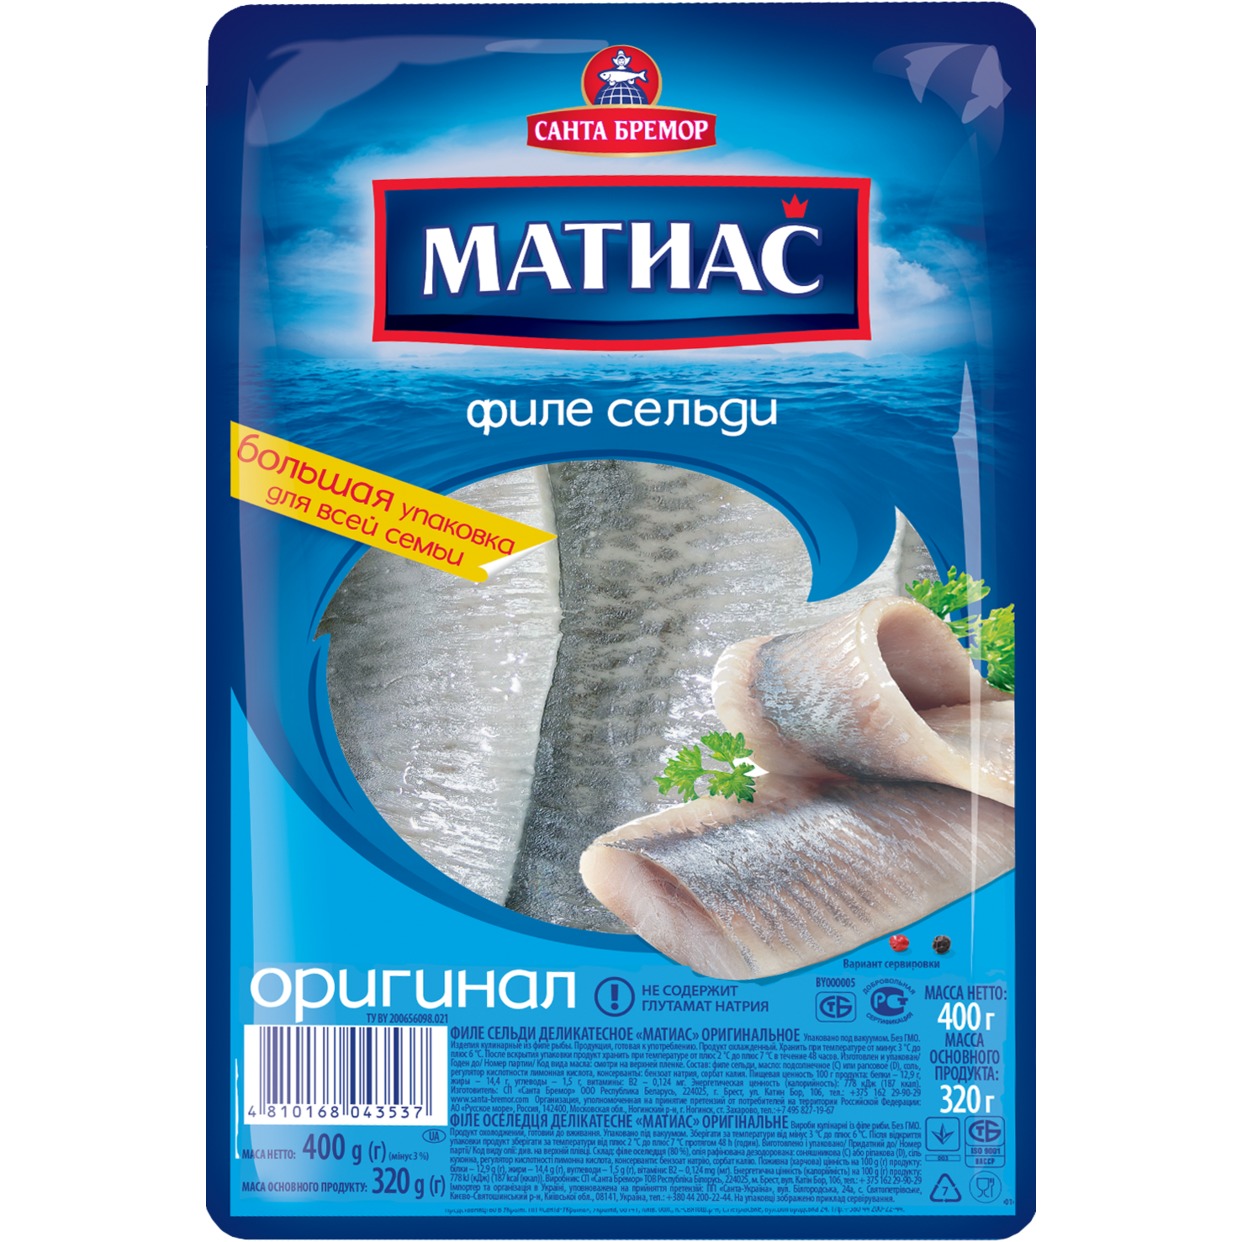 МАТИАС Филе сельди деликатесное оригинальное 400 гр по акции в Пятерочке